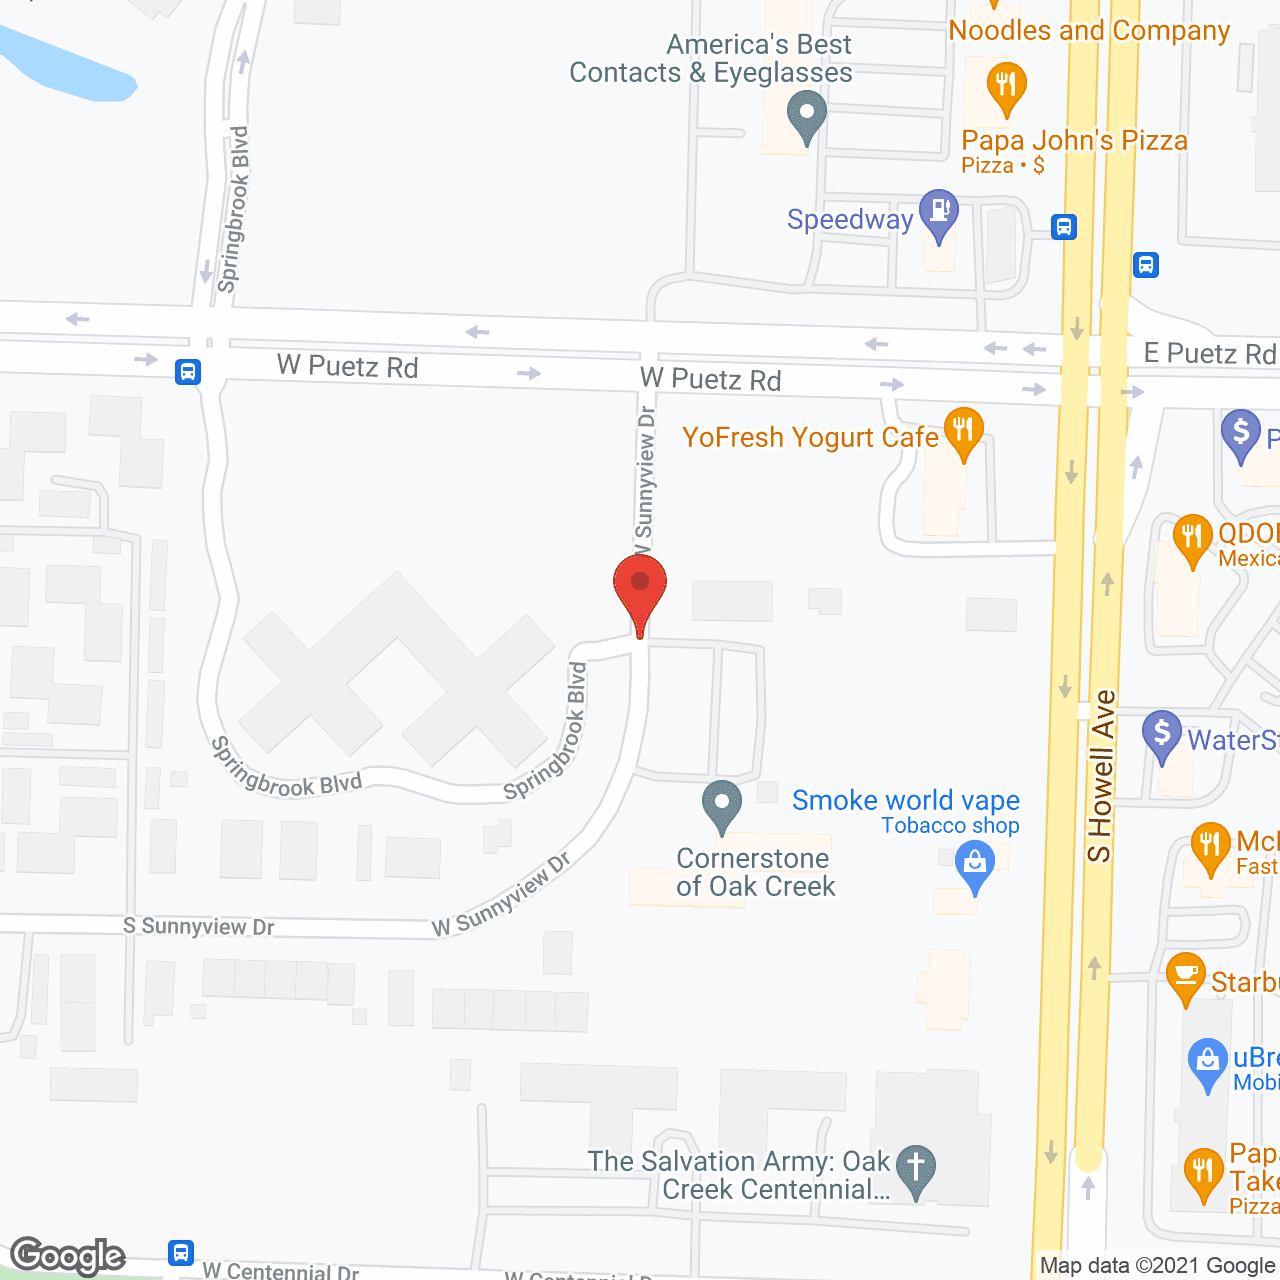 Cornerstone of Oak Creek in google map